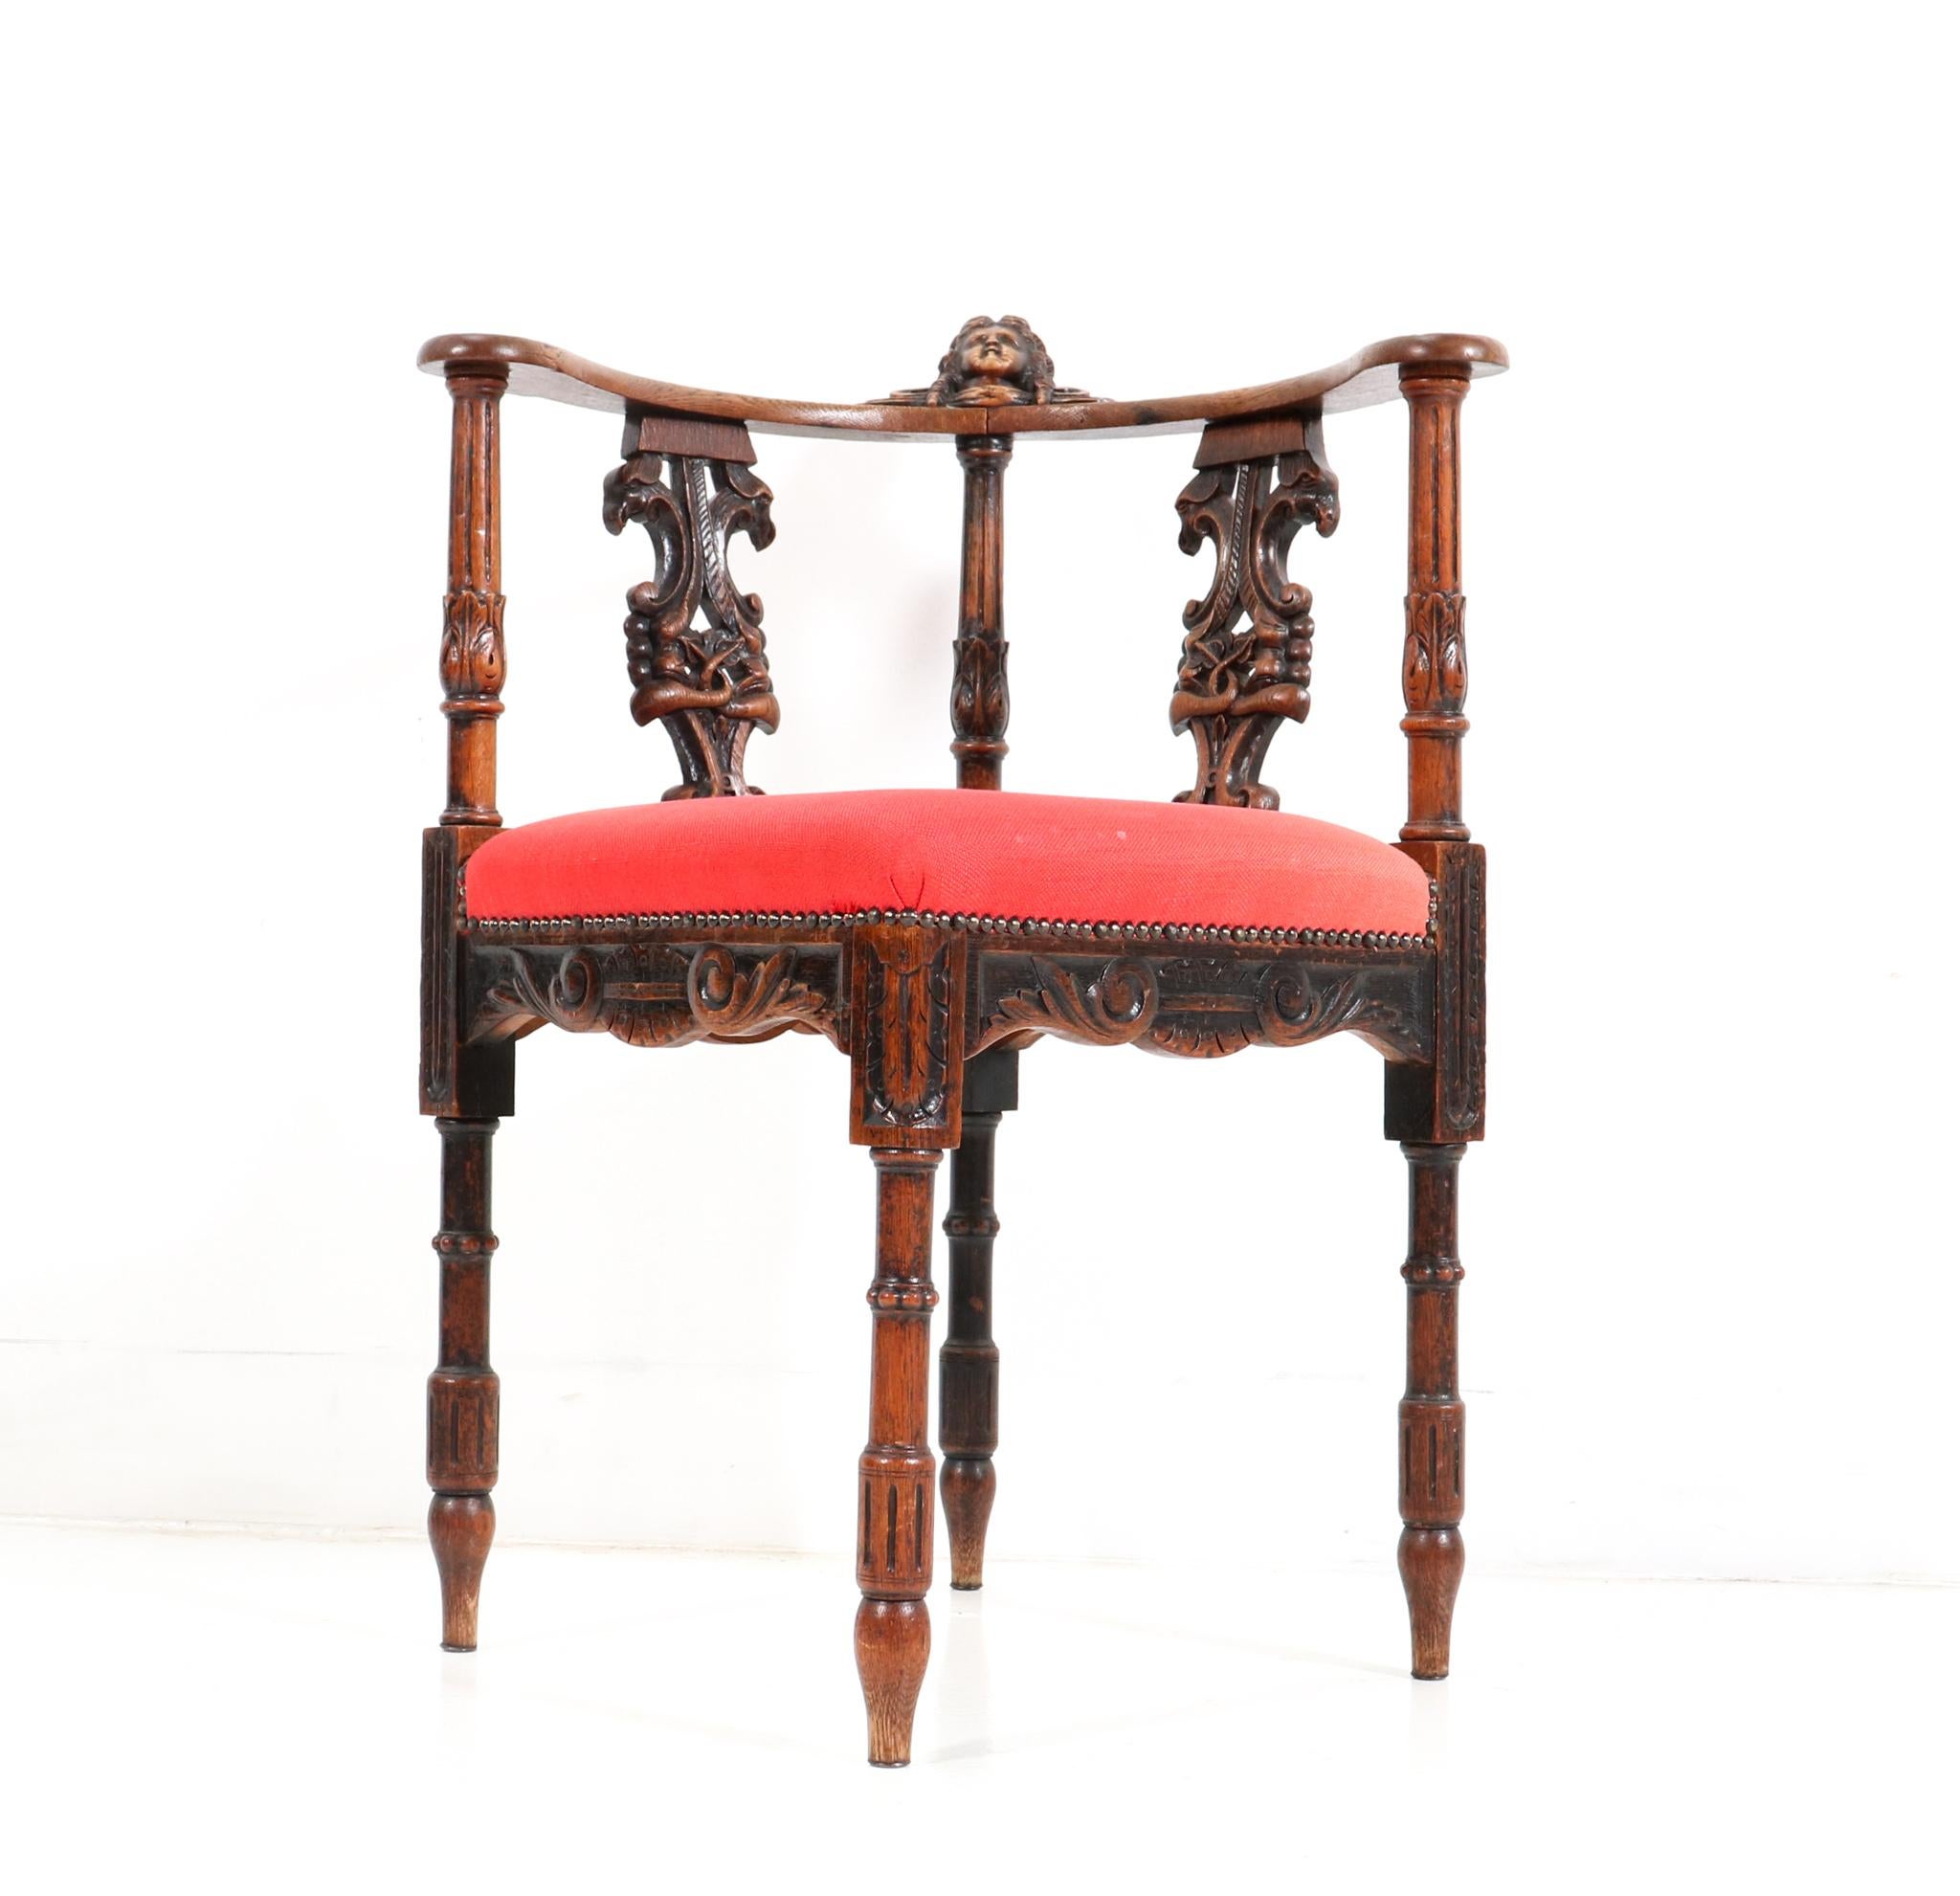 Superbe et rare fauteuil d'angle néo-Renaissance.
Un design français remarquable datant des années 1890.
Cadre en chêne massif avec éléments décoratifs originaux sculptés à la main.
Tête de femme originale sculptée à la main à l'arrière des